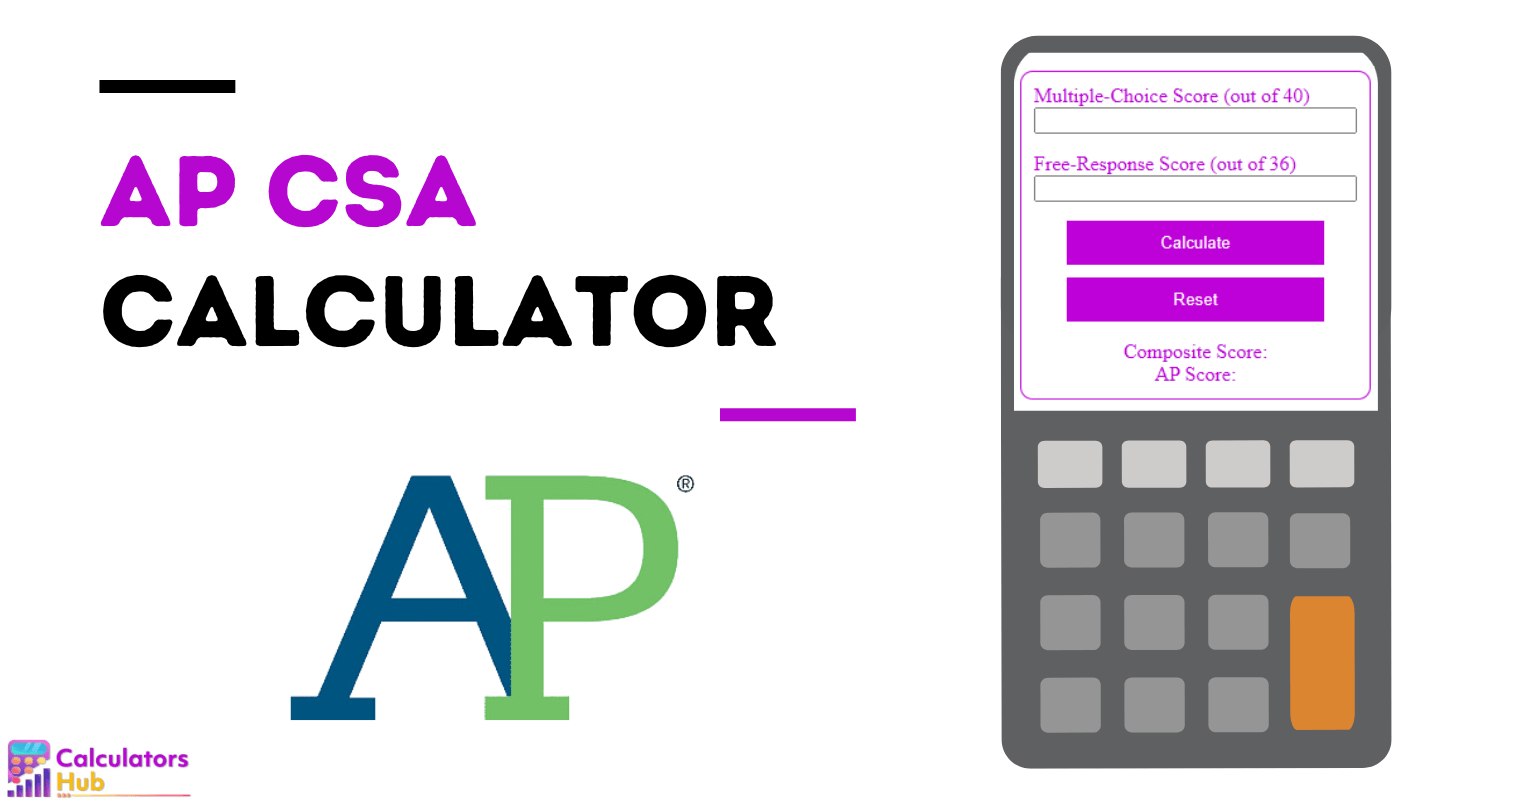 AP CSA Calculator